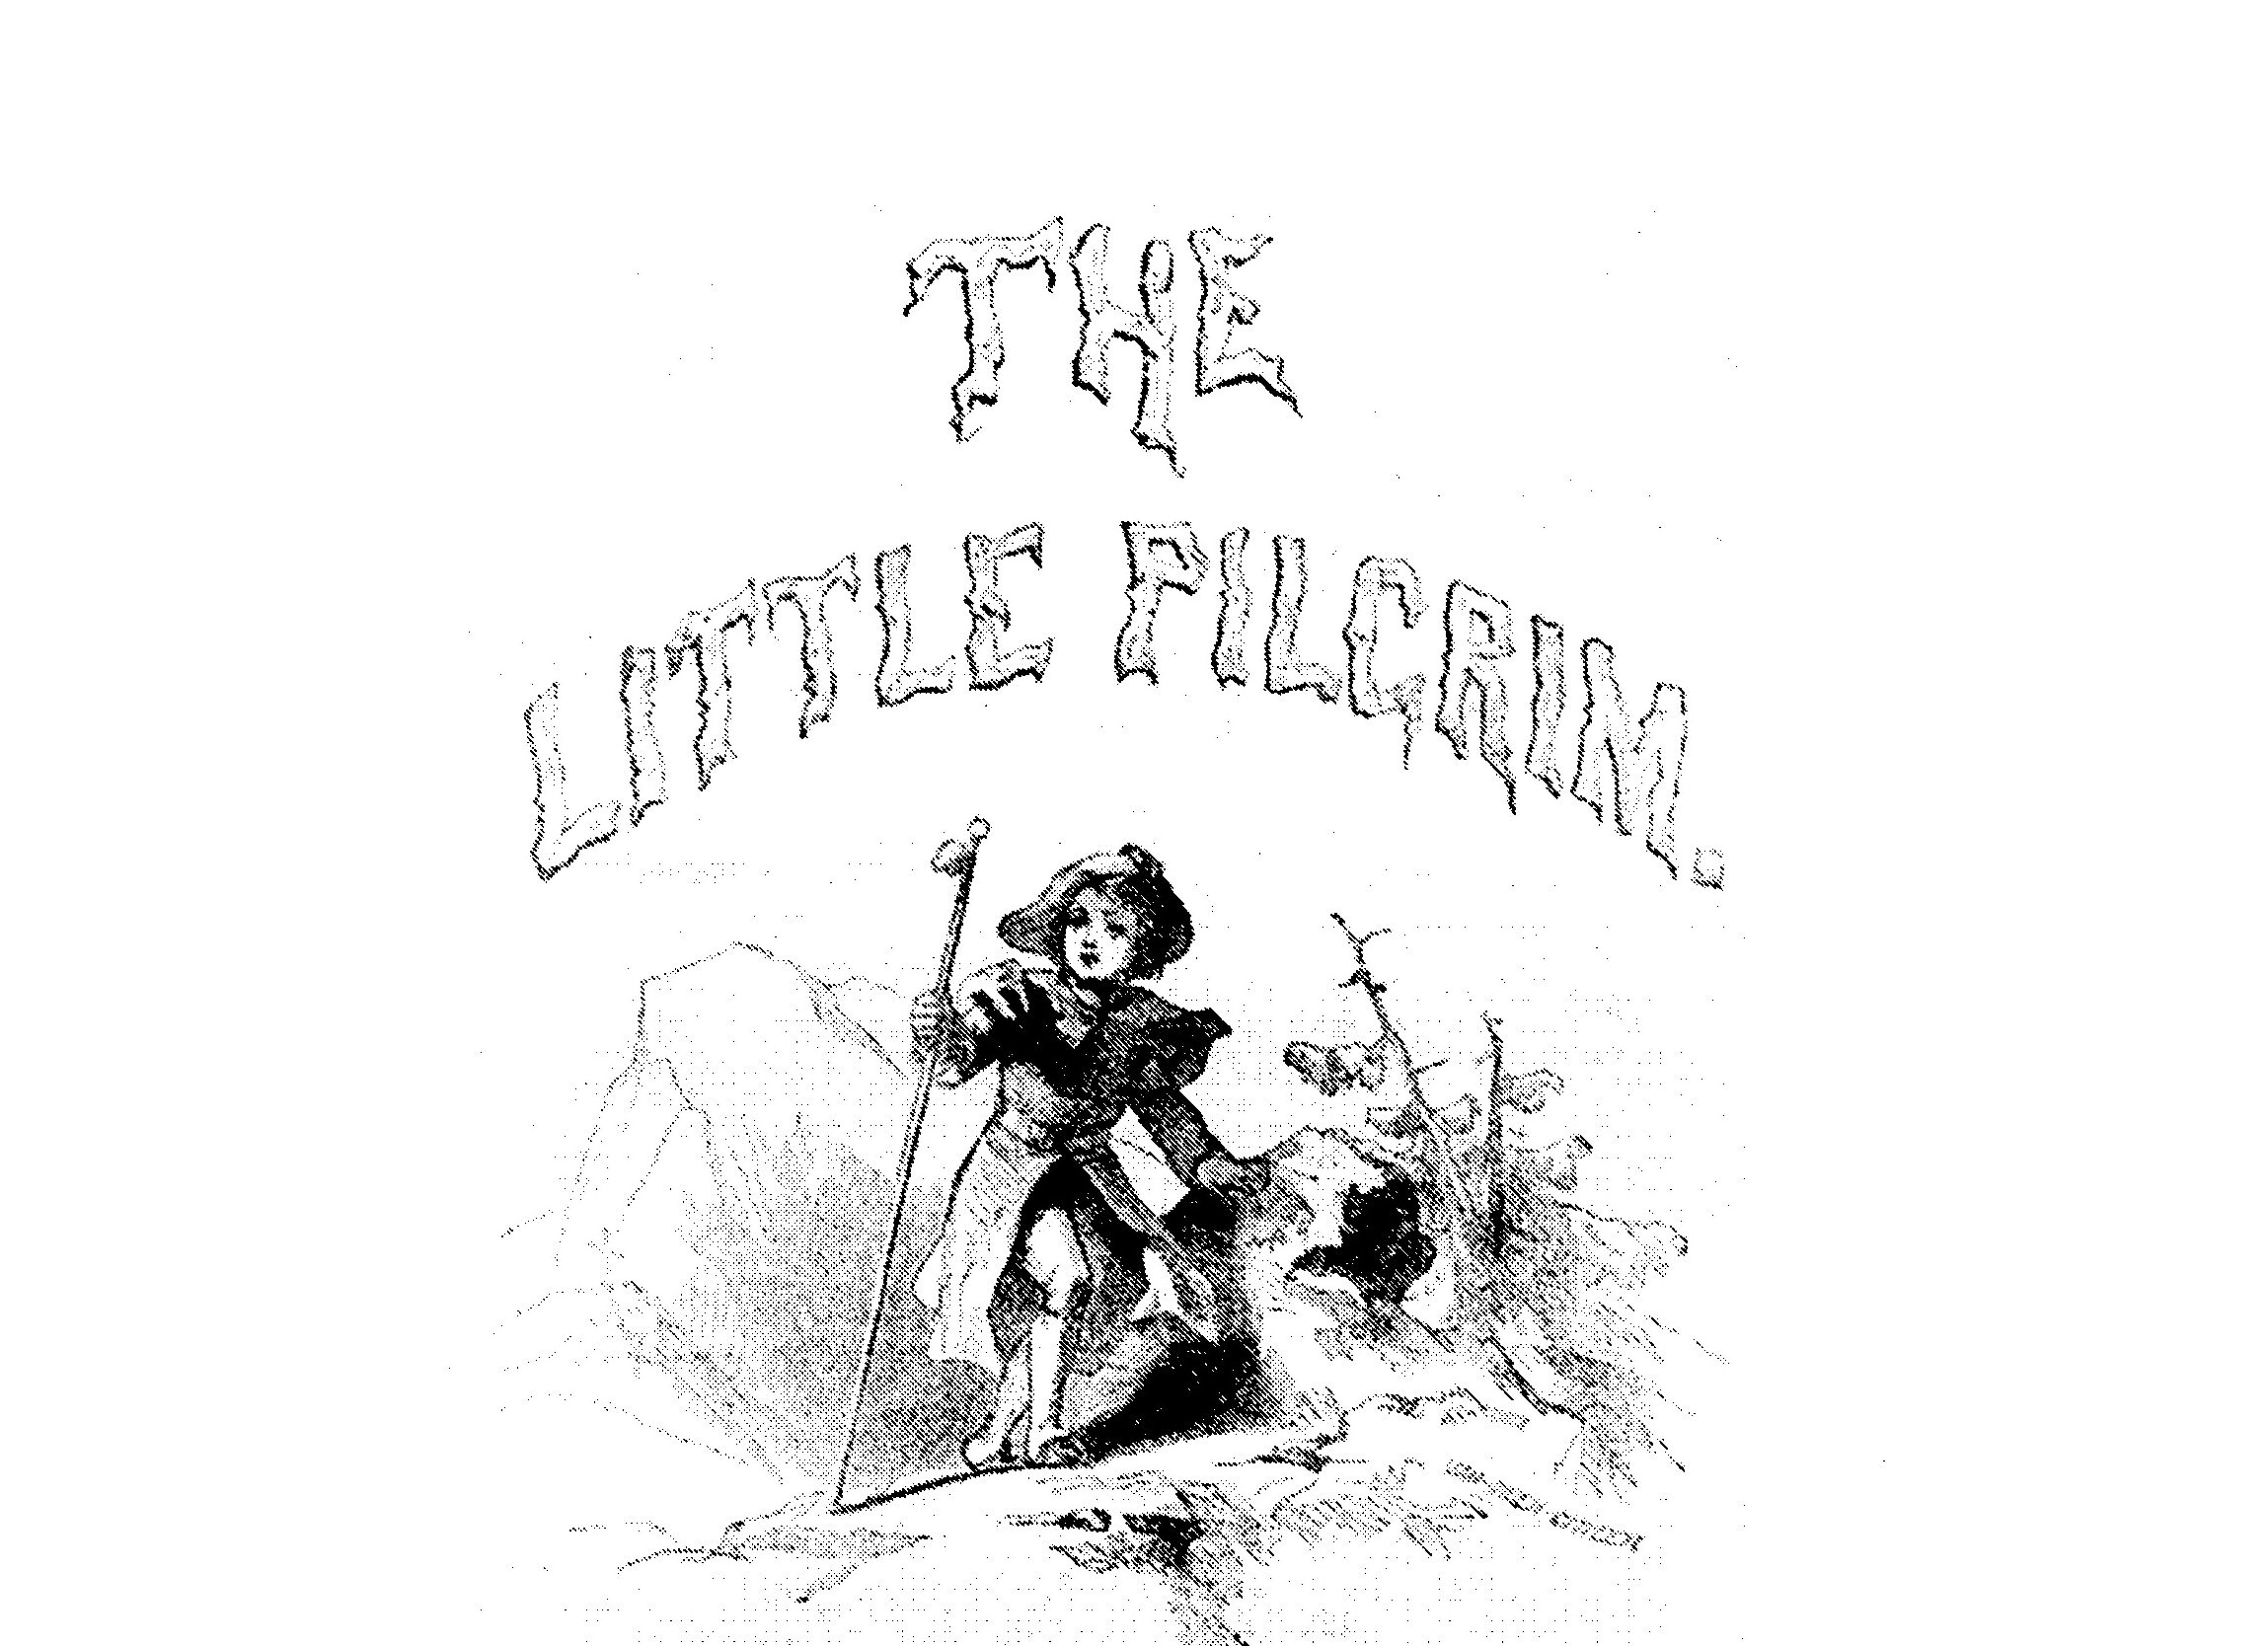  THE LITTLE PILGRIM